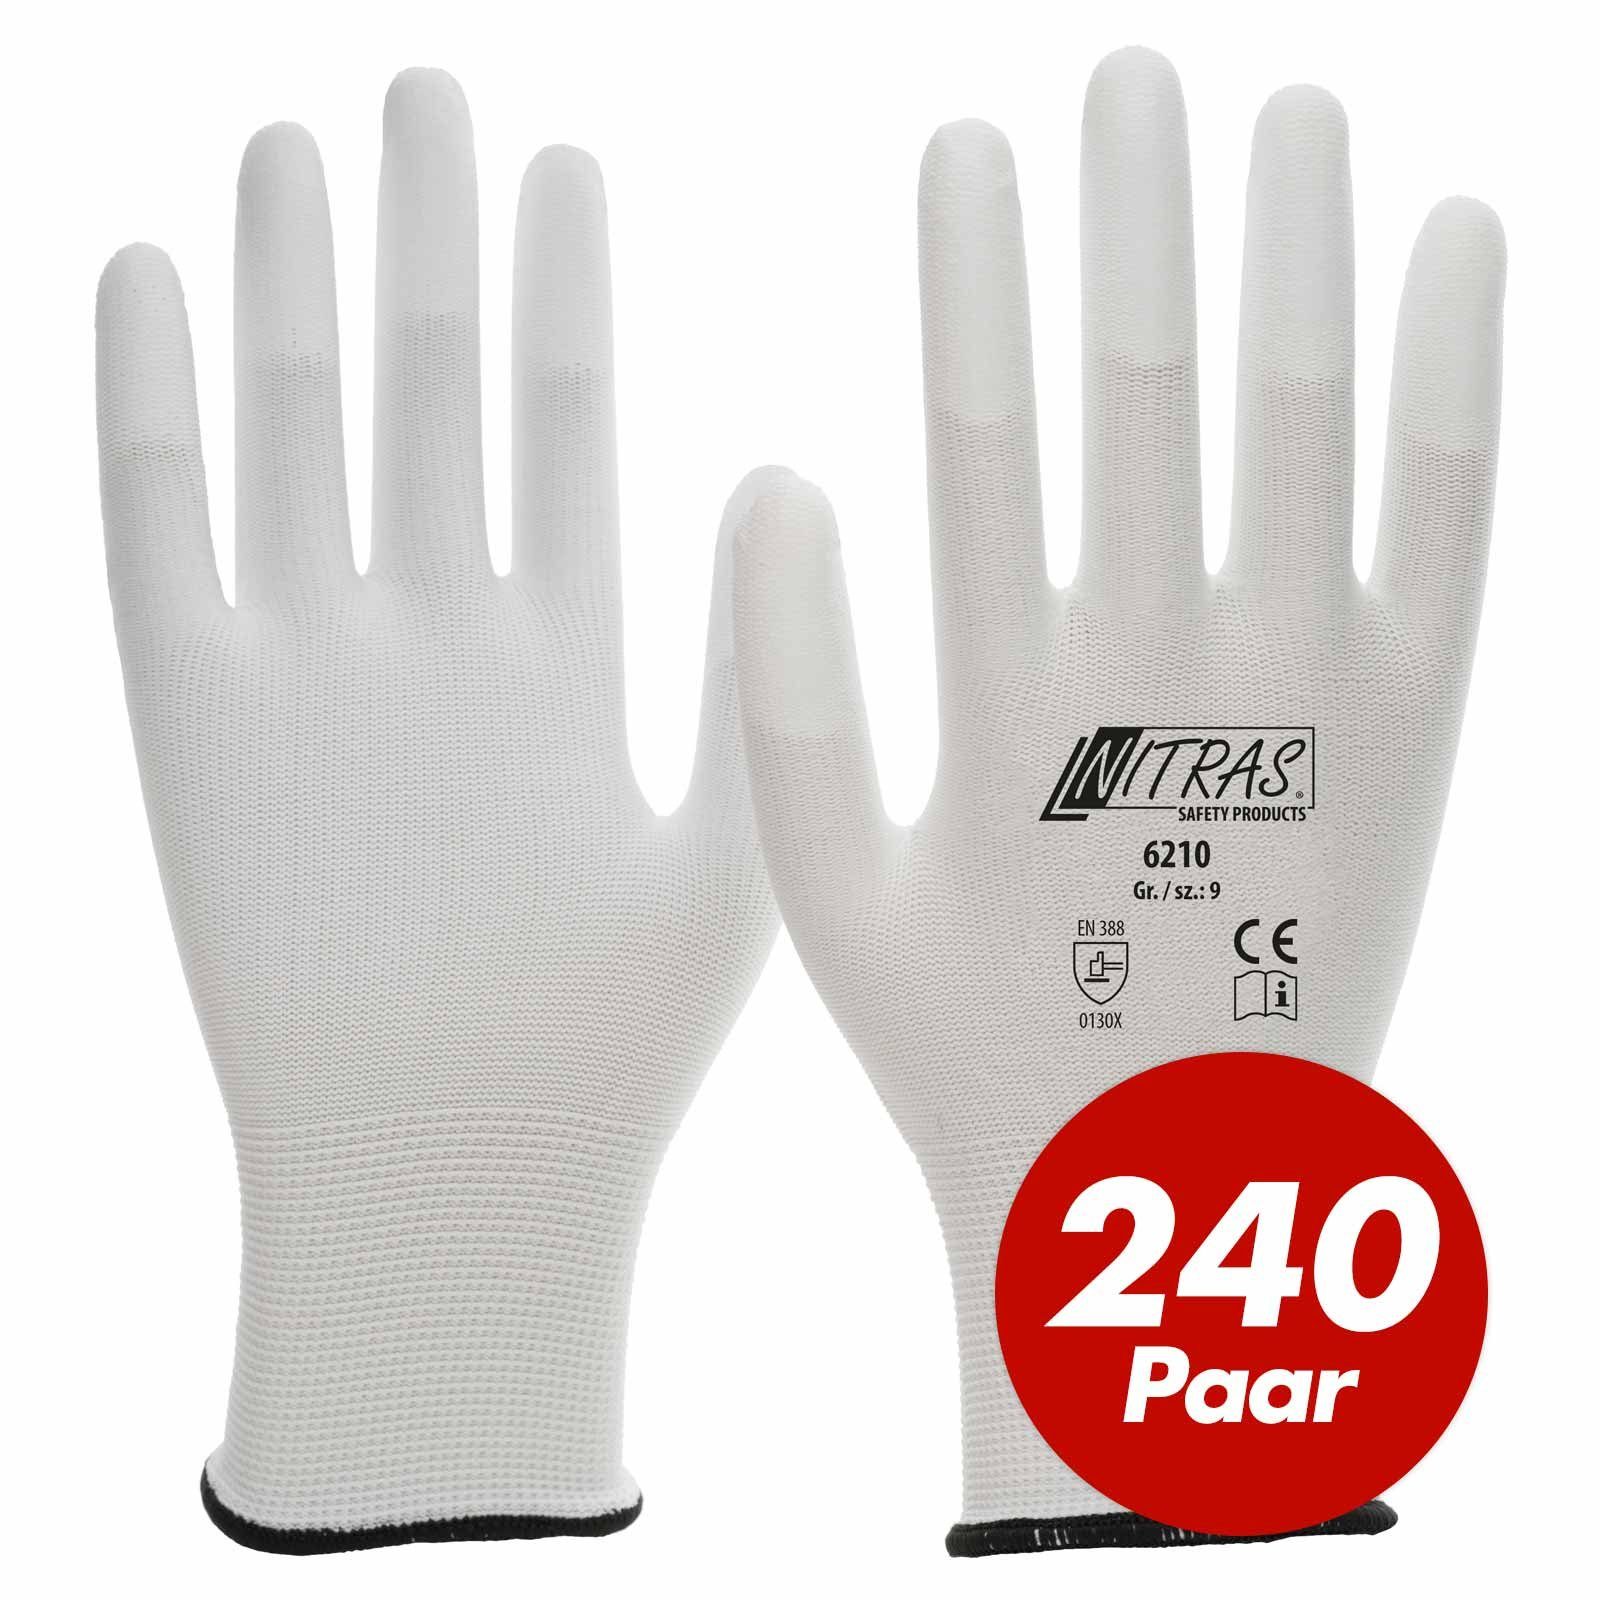 Nitras Nitril-Handschuhe NITRAS Nylon-Handschuhe 6210, PU-Fingerkuppenbeschichtung - 240 Paar (Spar-Set) | Handschuhe